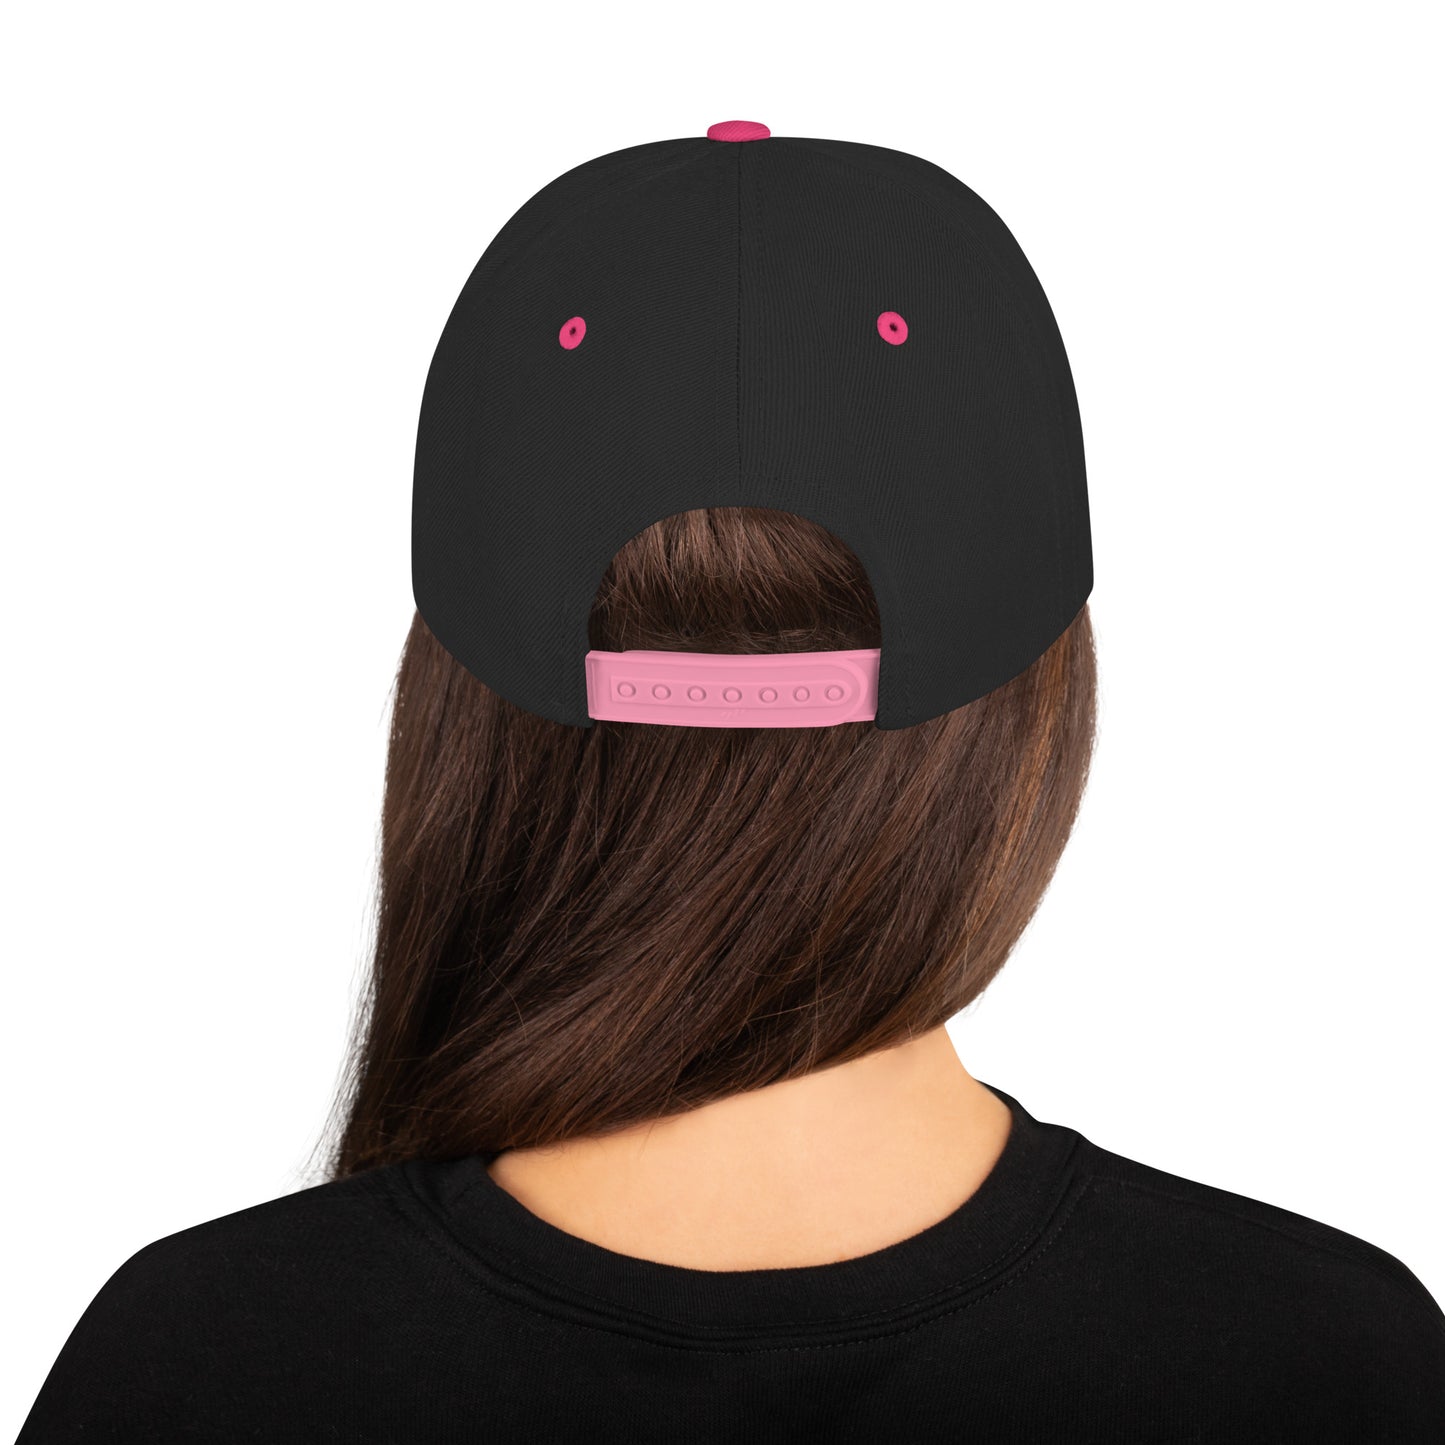 Tejano - Snapback Hat